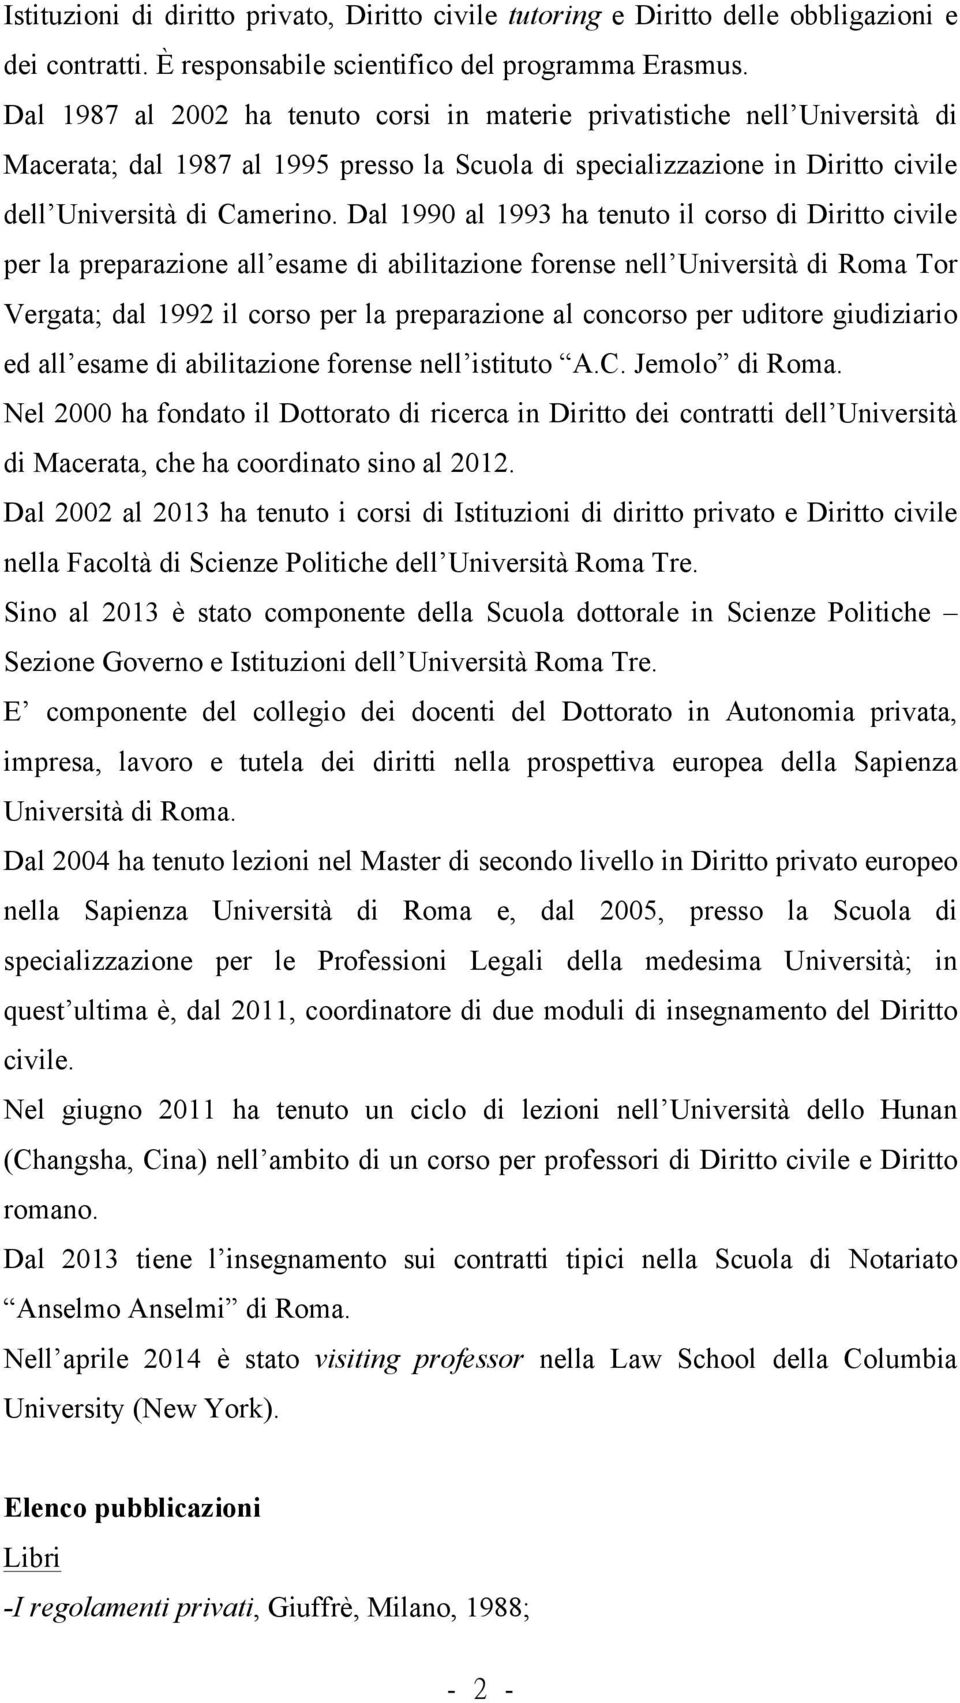 Dal 1990 al 1993 ha tenuto il corso di Diritto civile per la preparazione all esame di abilitazione forense nell Università di Roma Tor Vergata; dal 1992 il corso per la preparazione al concorso per